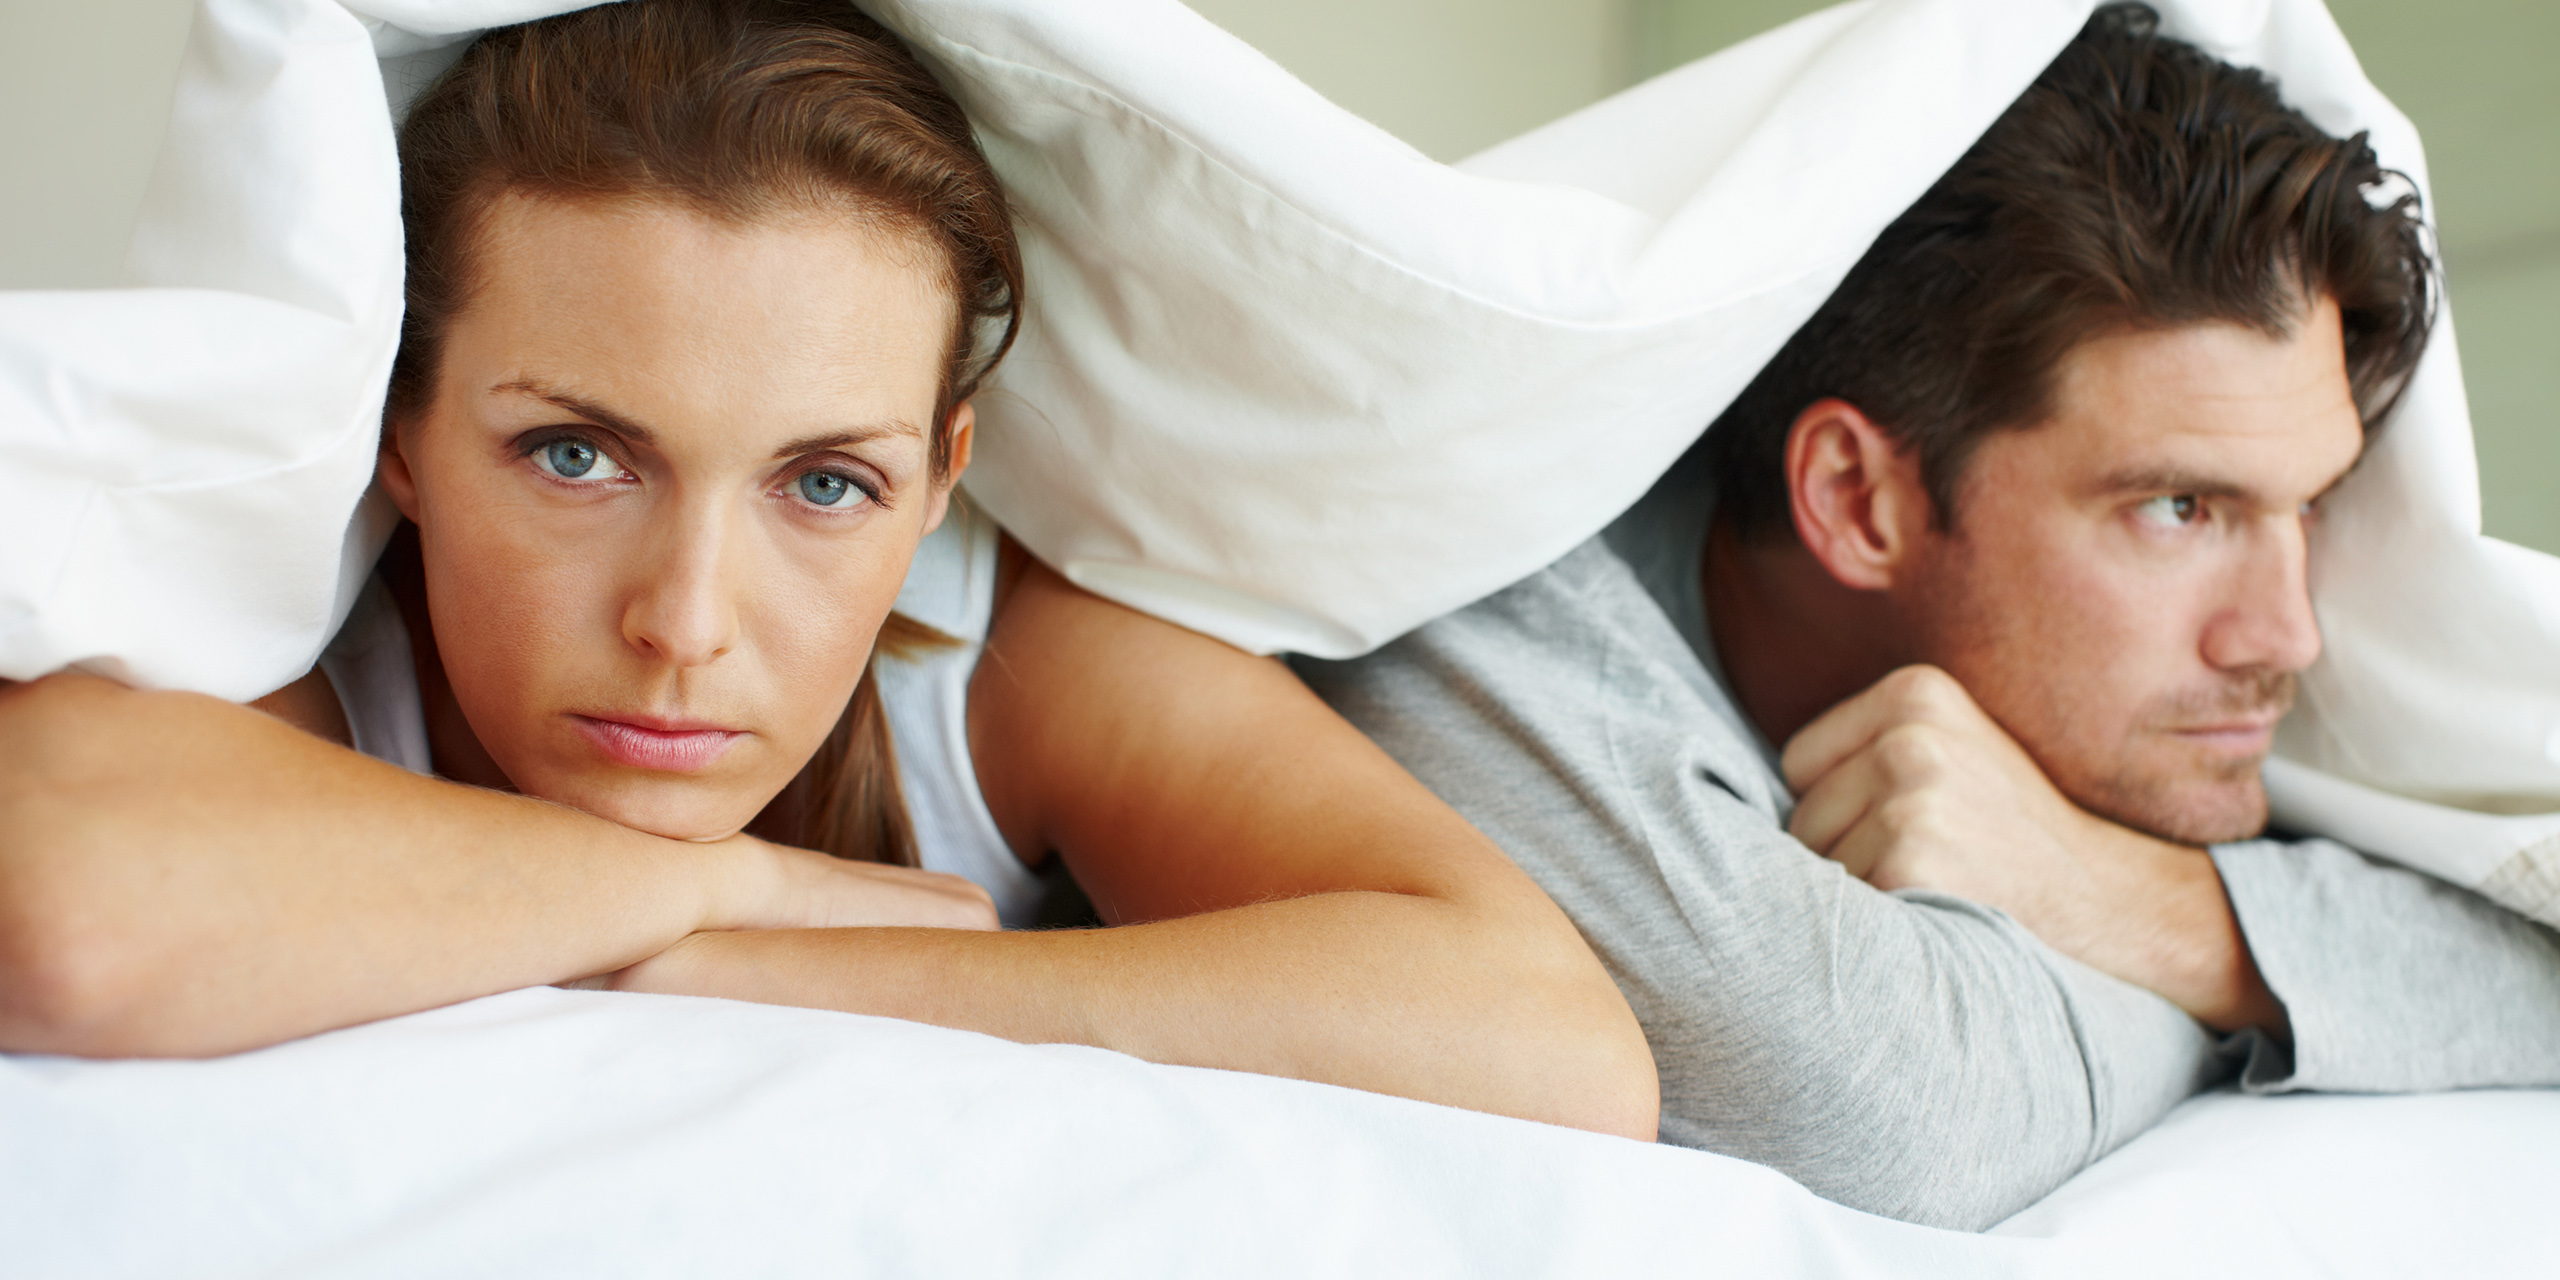 Do men snore more than women?